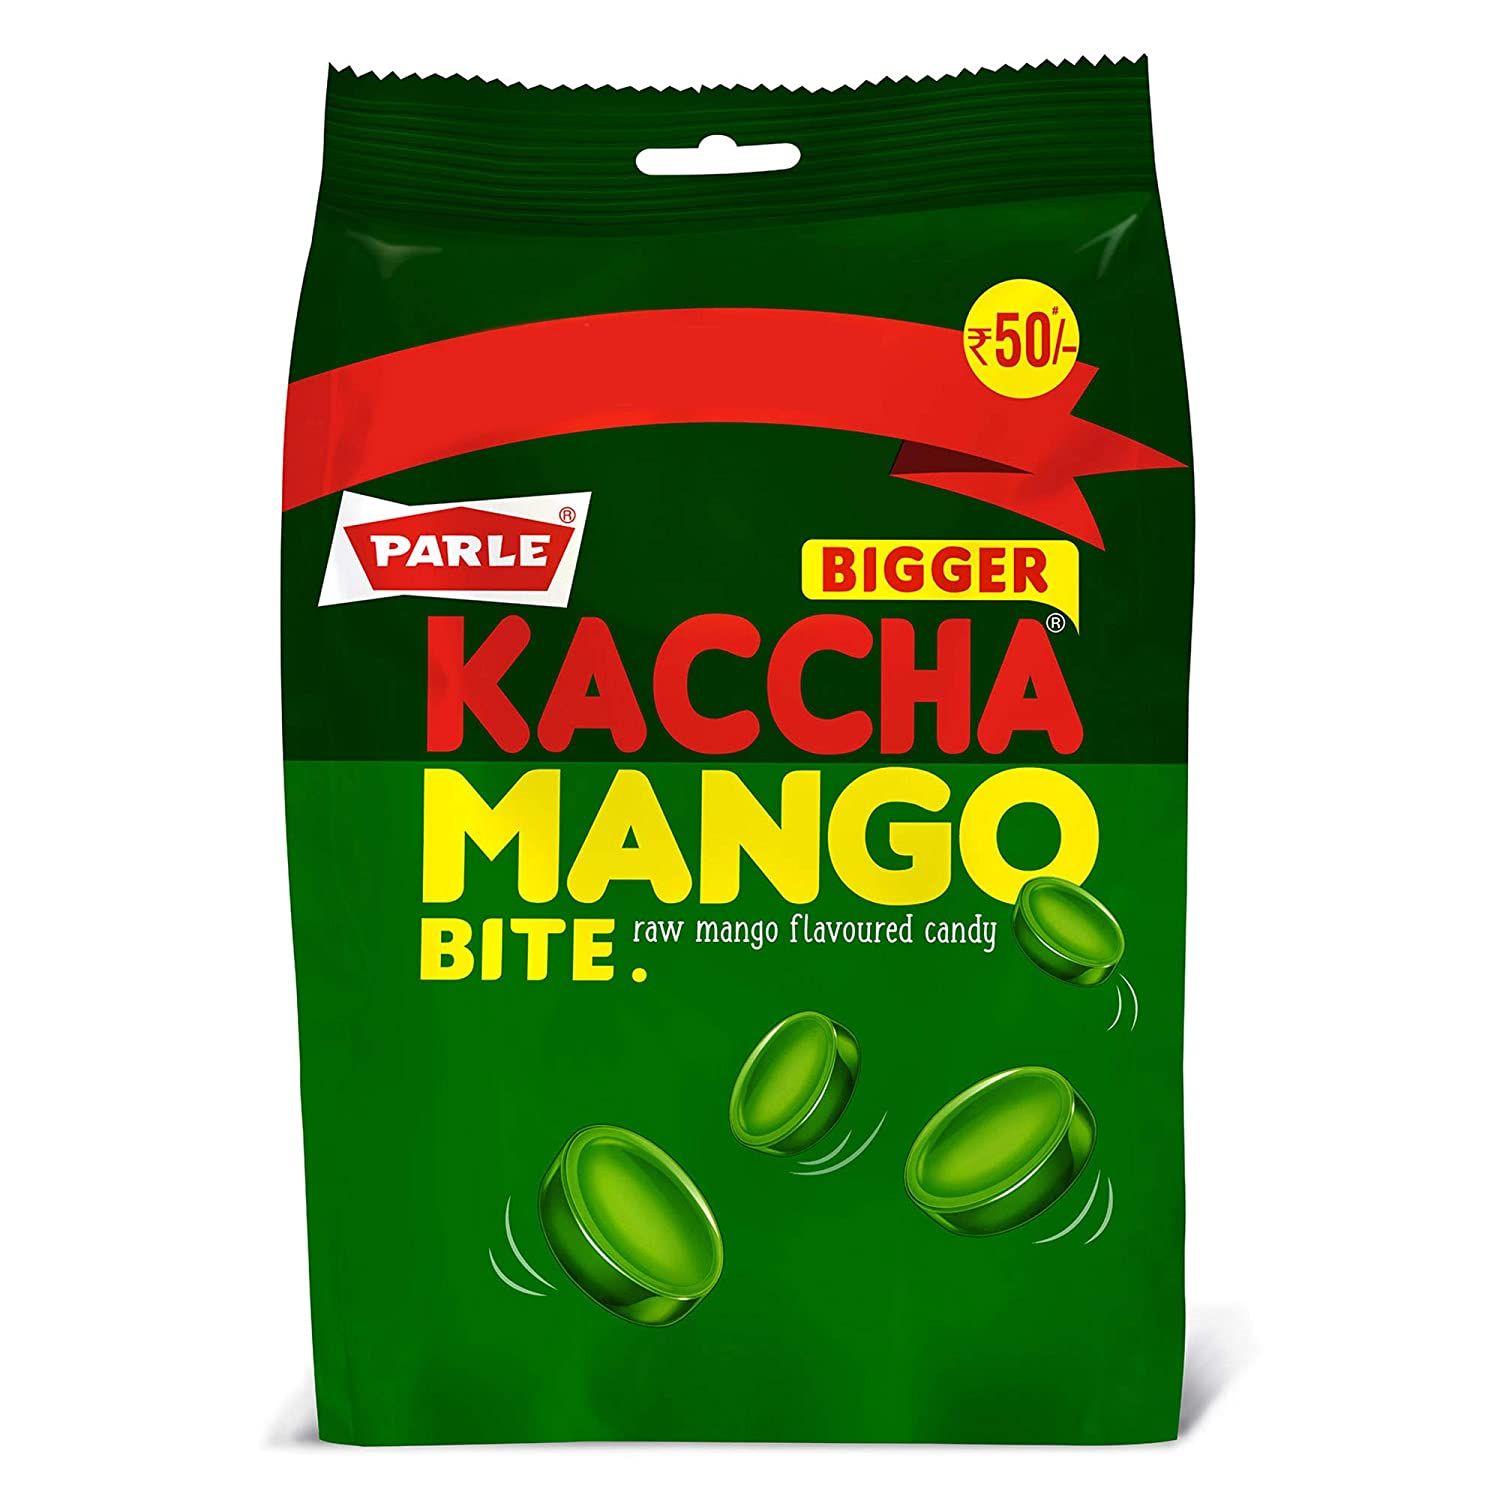 Parle Bigger Kaccha Mango Bite Image